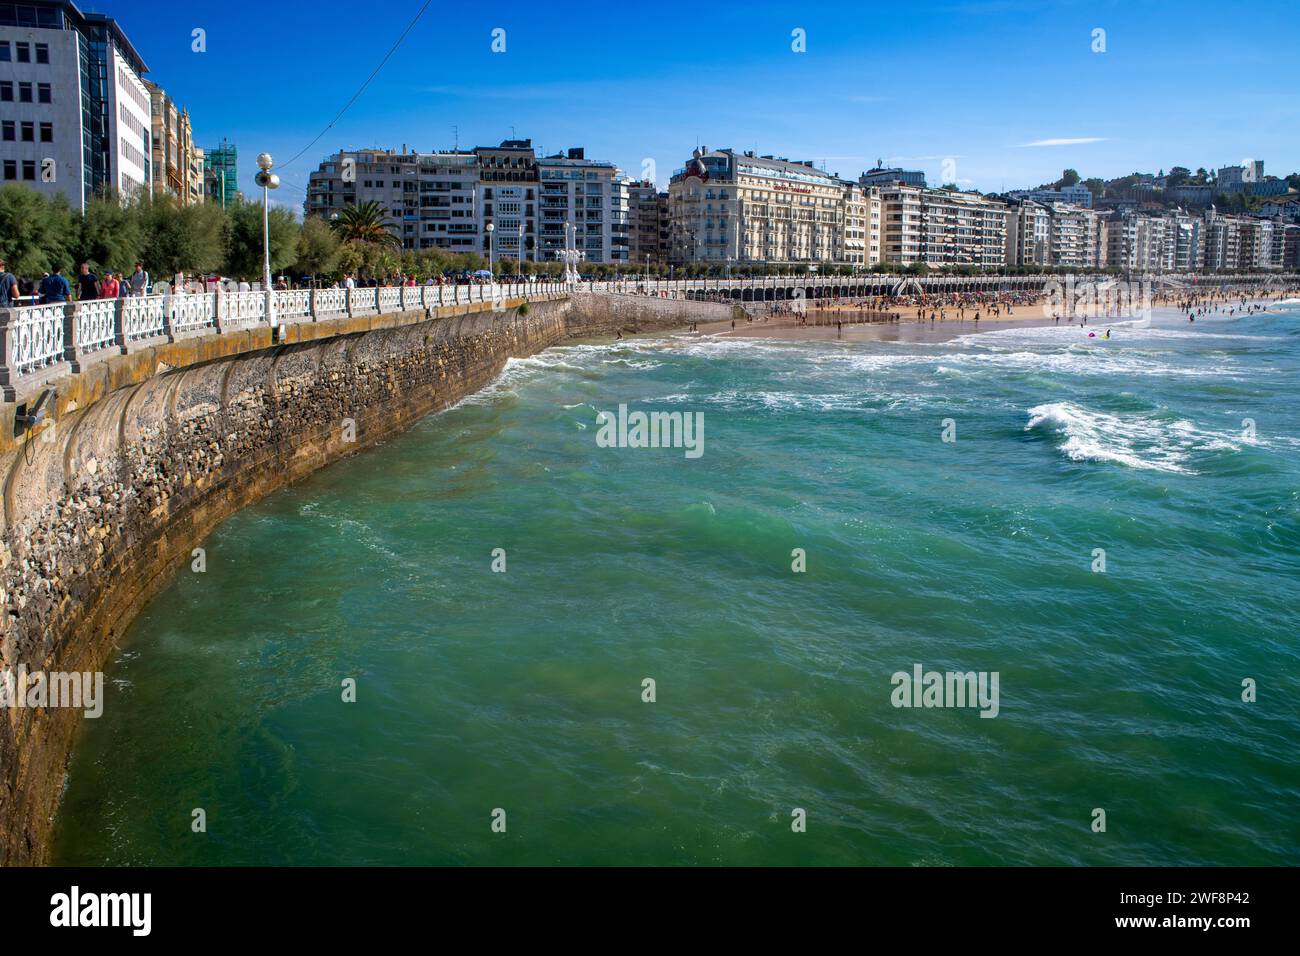 Seaside promenade, Playa de la Concha beach, Bahia de la Concha, San Sebastian, Donostia, Camino de la Costa, Camino del Norte, coastal route, Way of Stock Photo